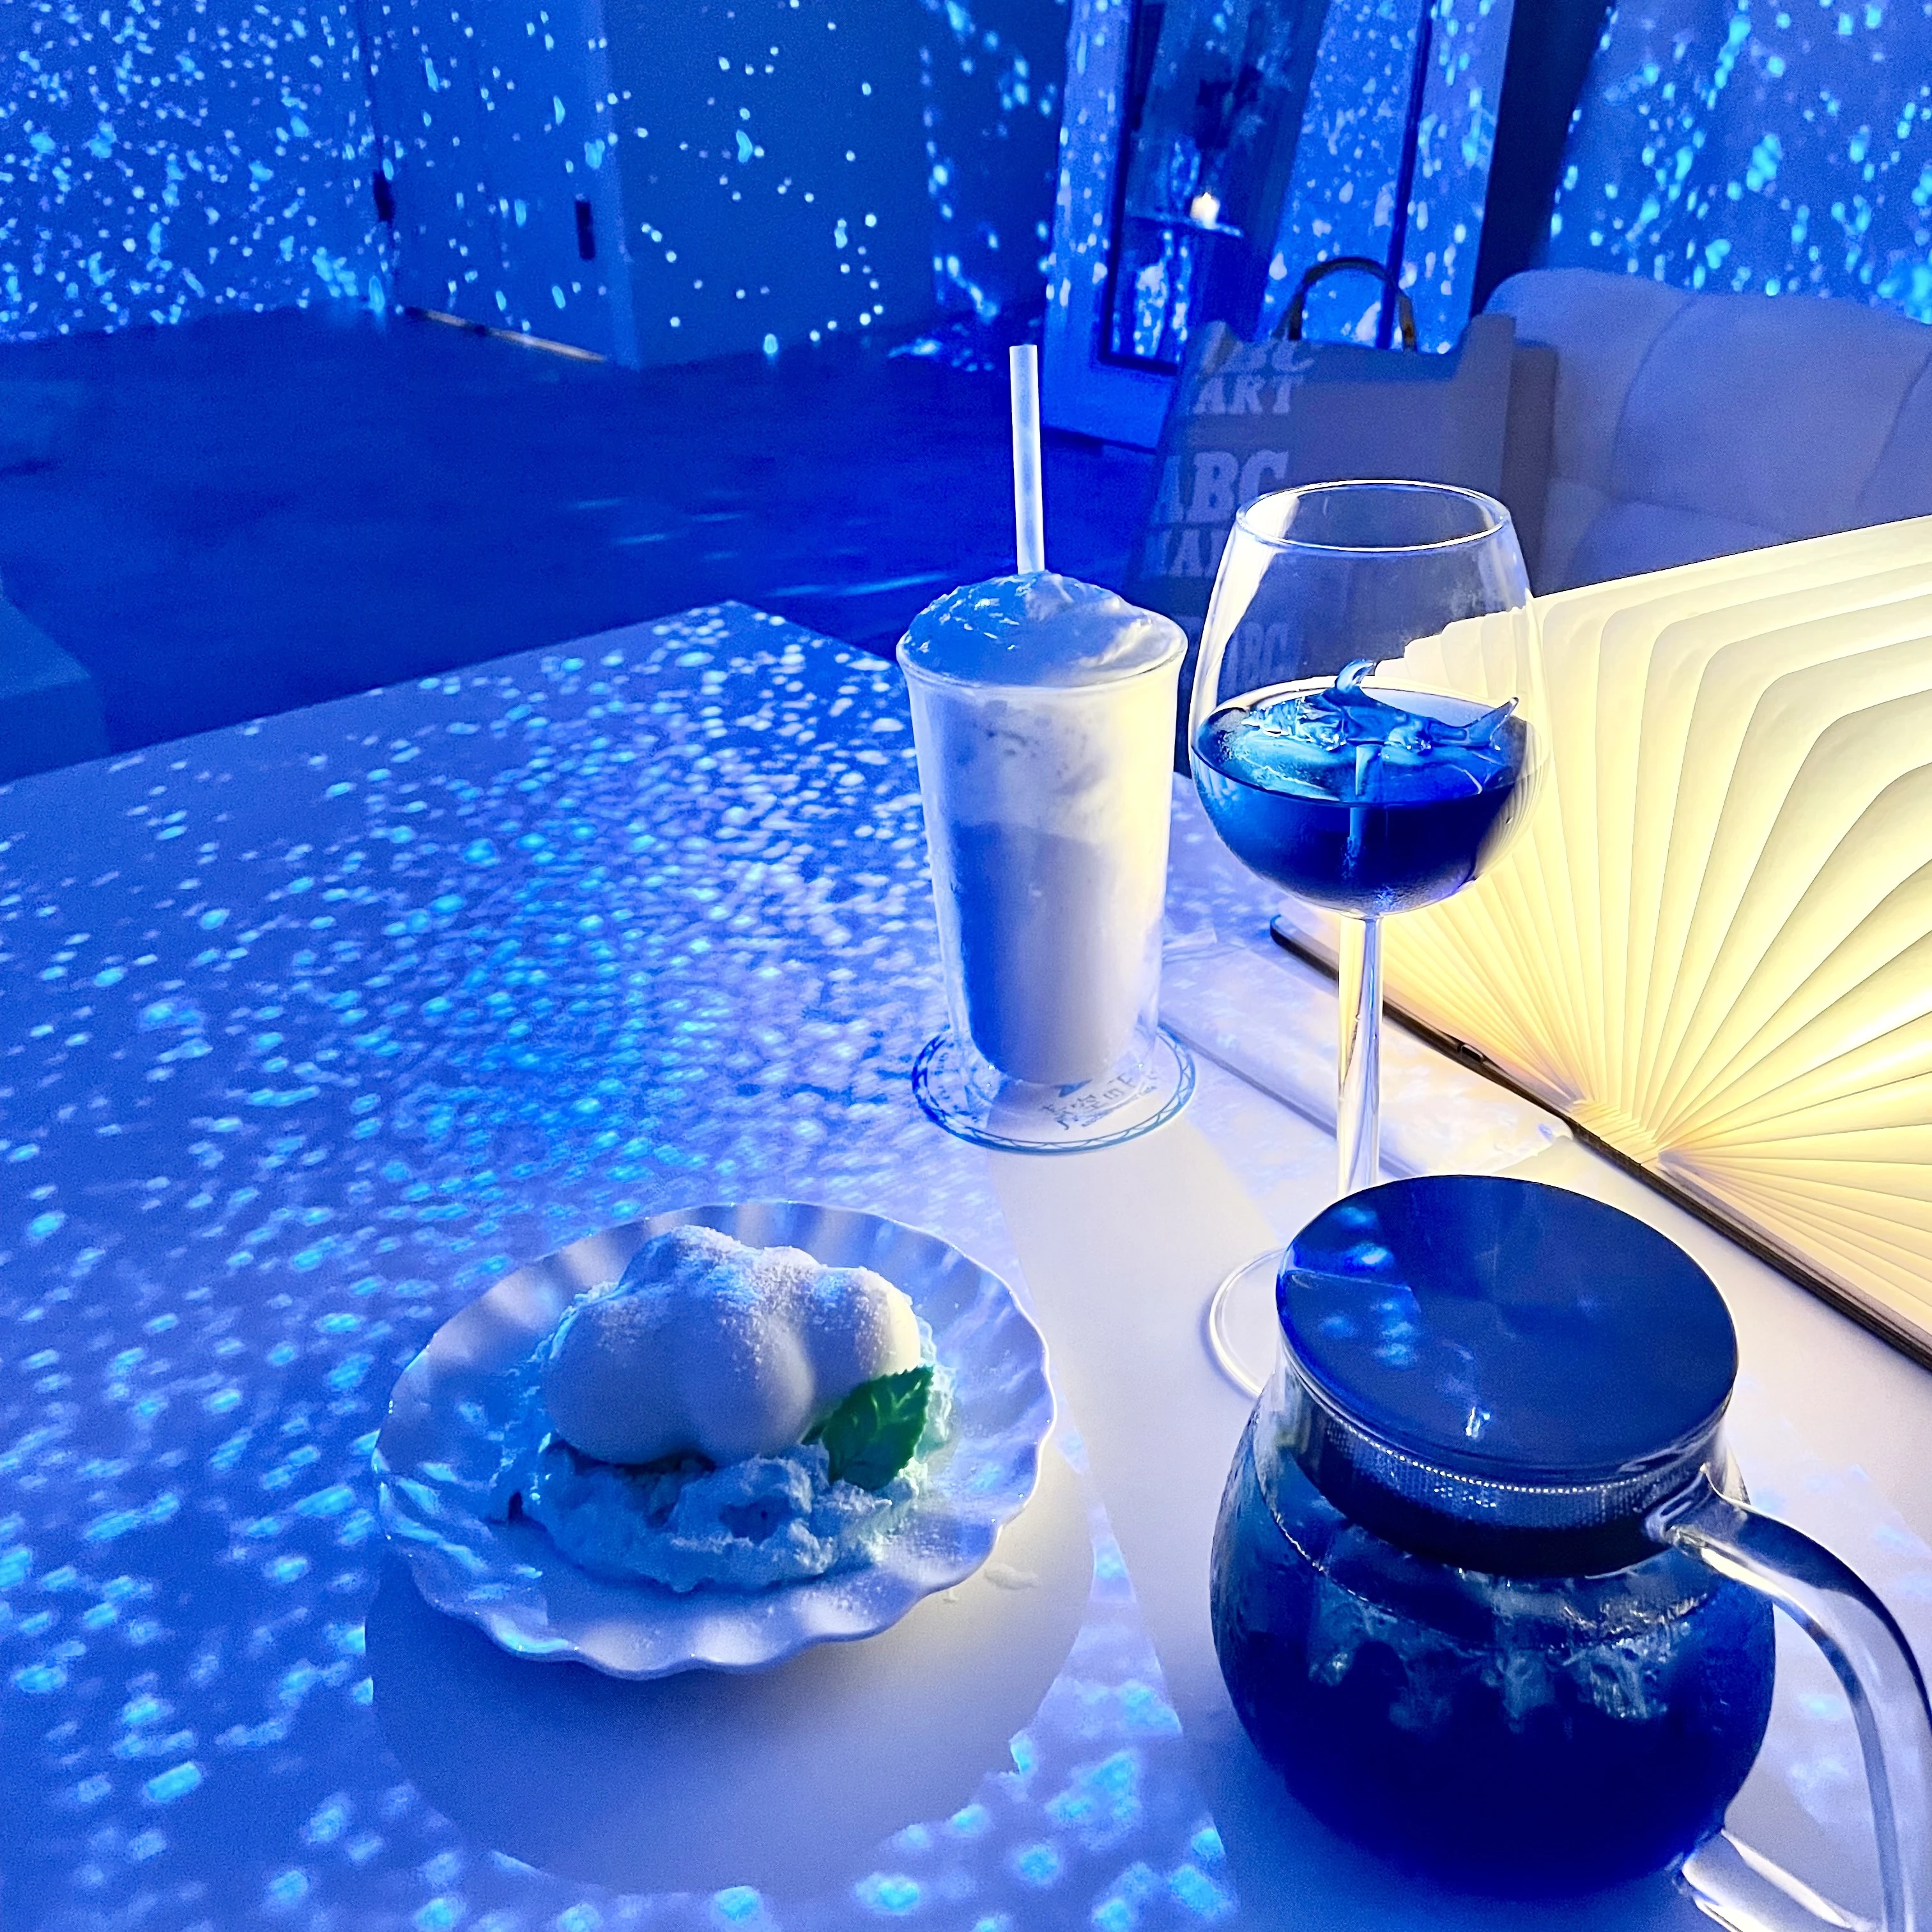 【札幌カフェ】非日常空間で特別な時間を♡プロジェクションマッピングカフェ「青空の下で」_1_4-1